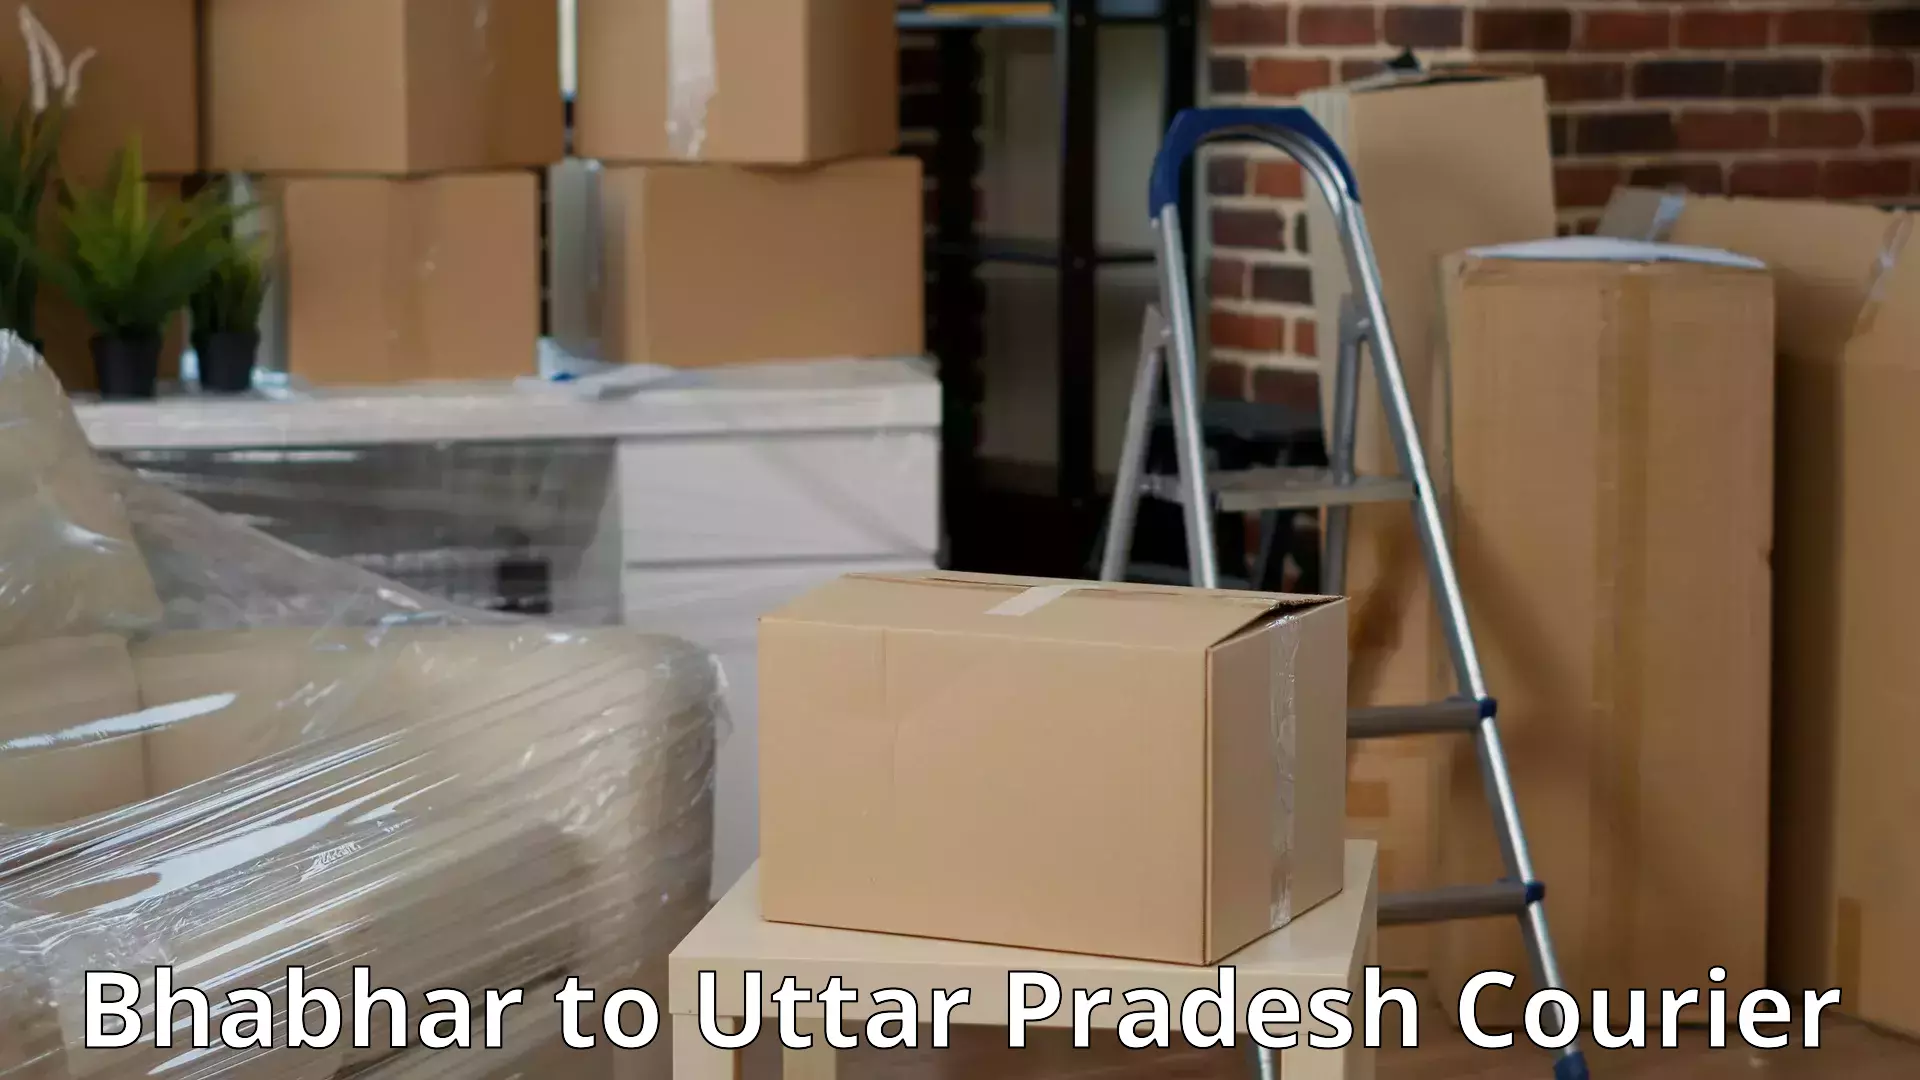 Professional movers Bhabhar to Ganj Dundwara